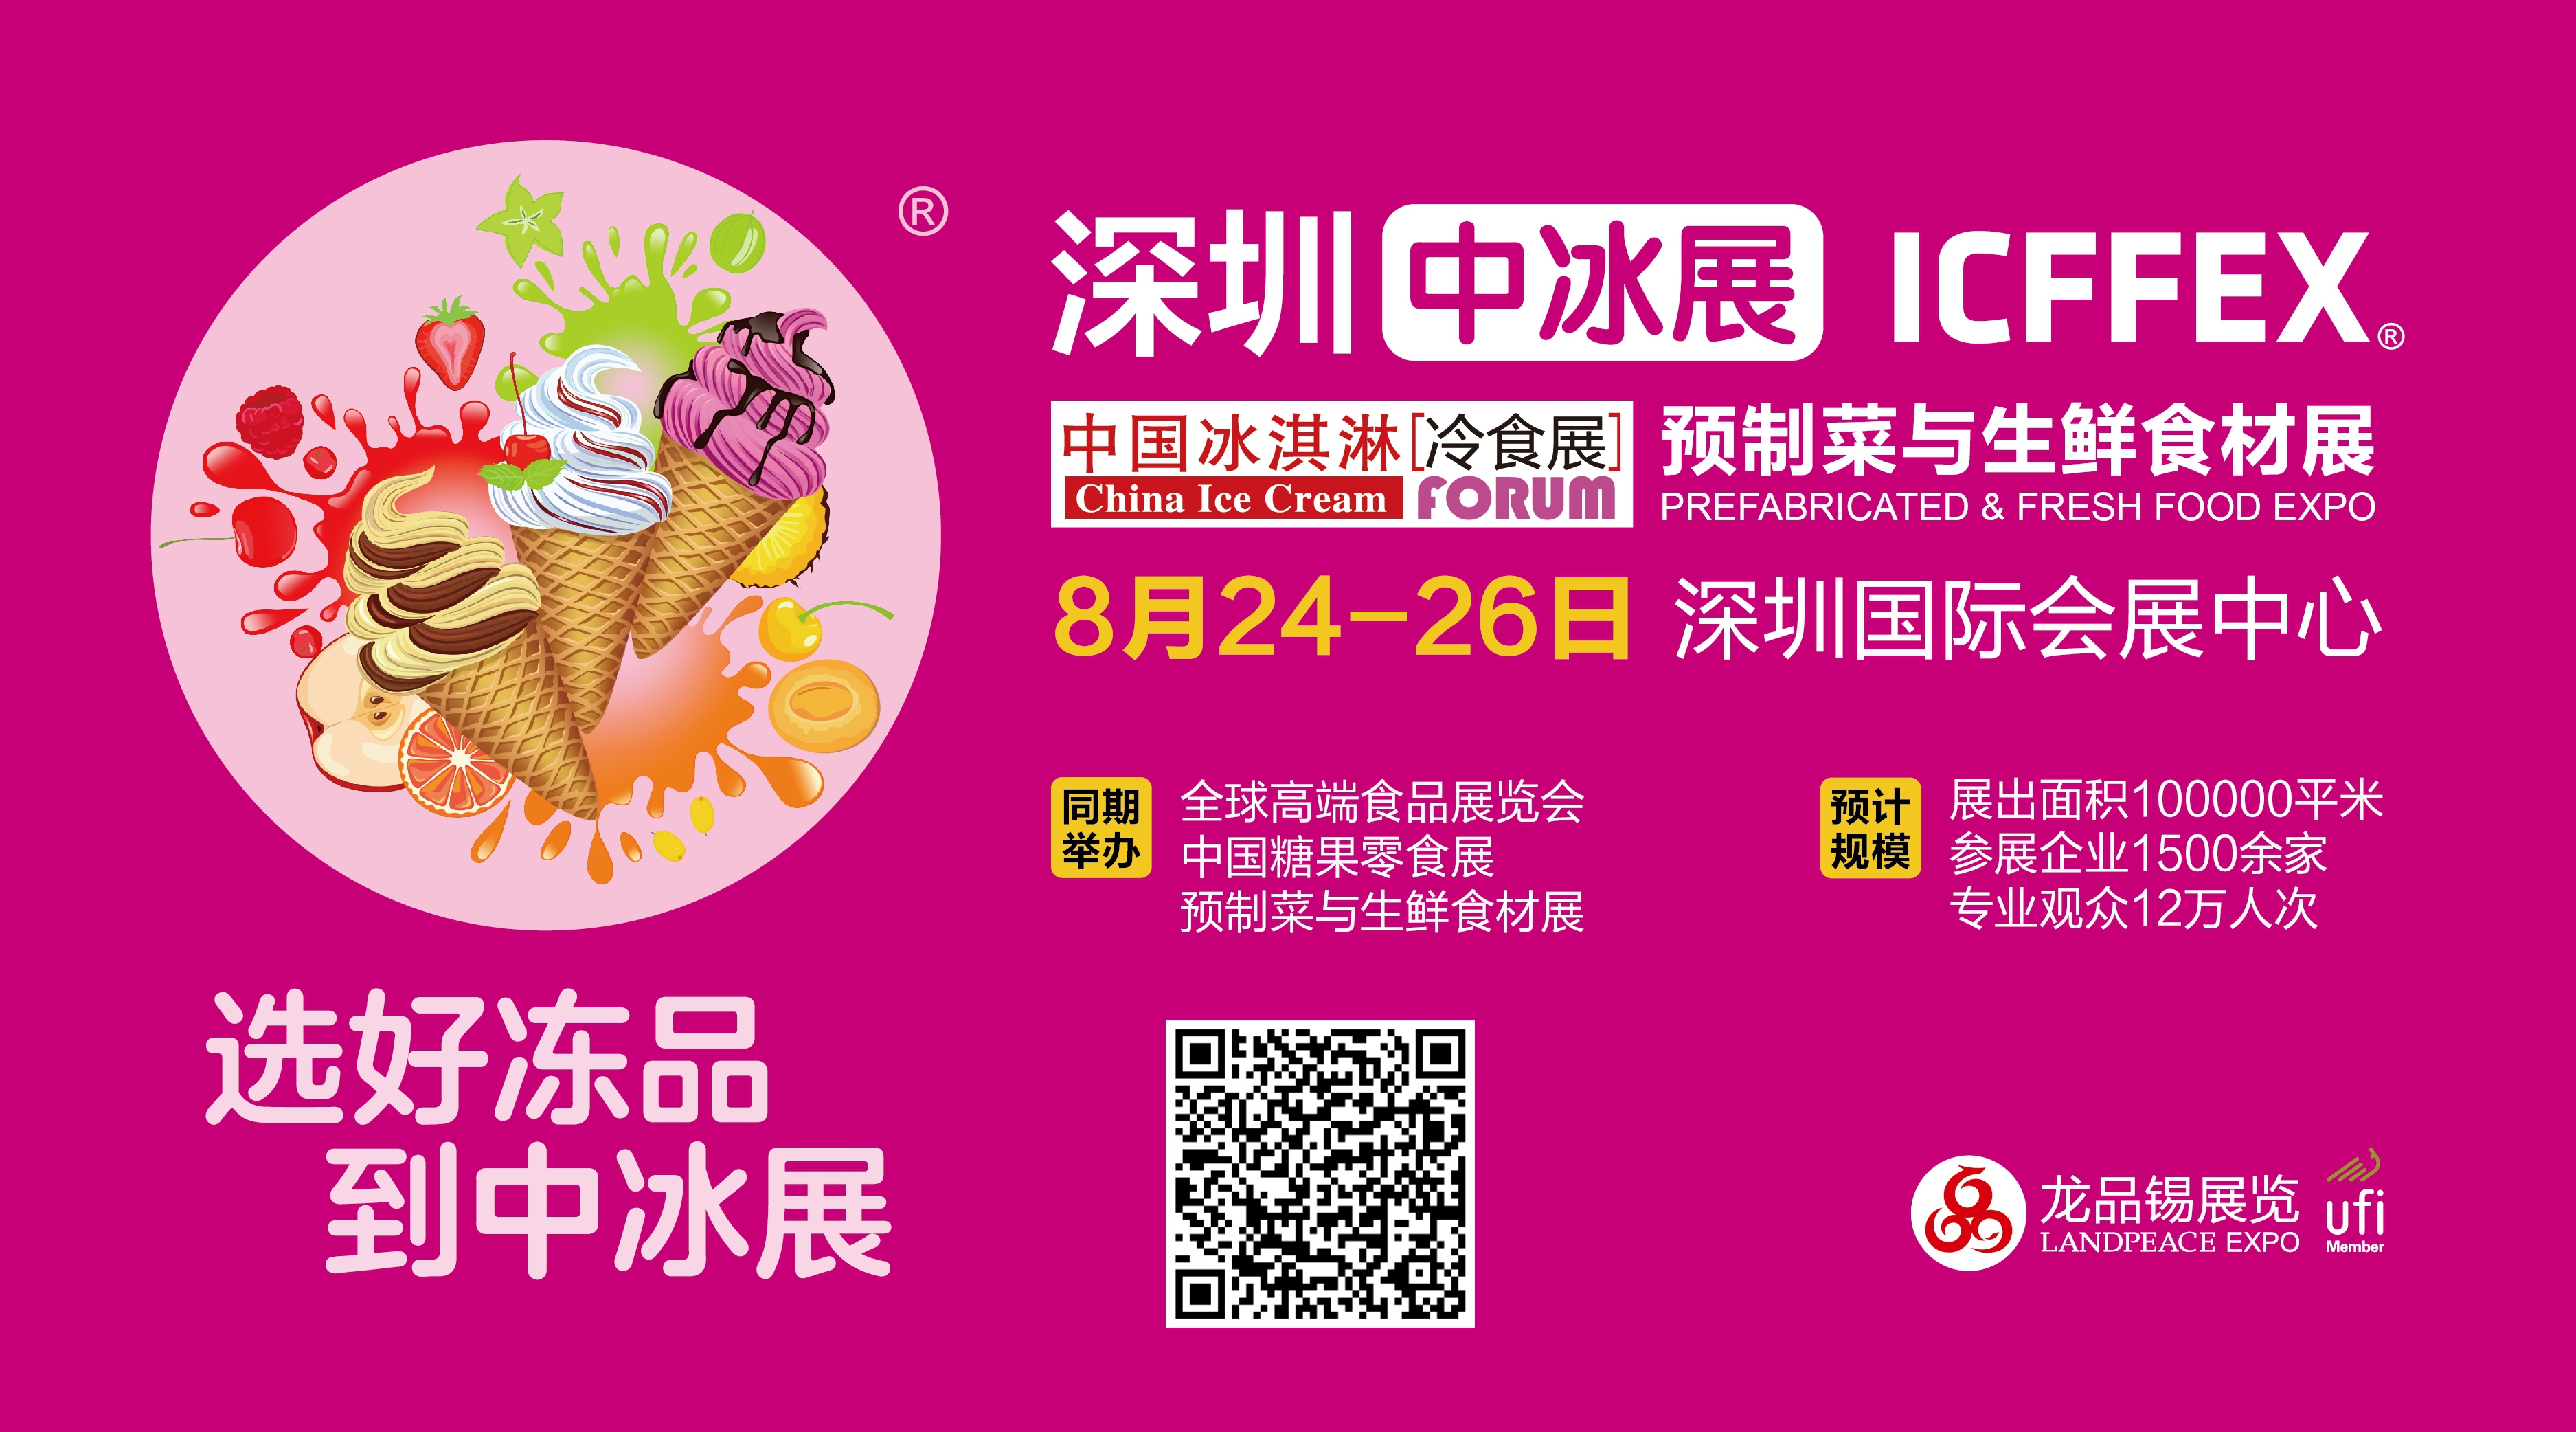 2022全球高端食品展览会—中国冰淇淋冷食展